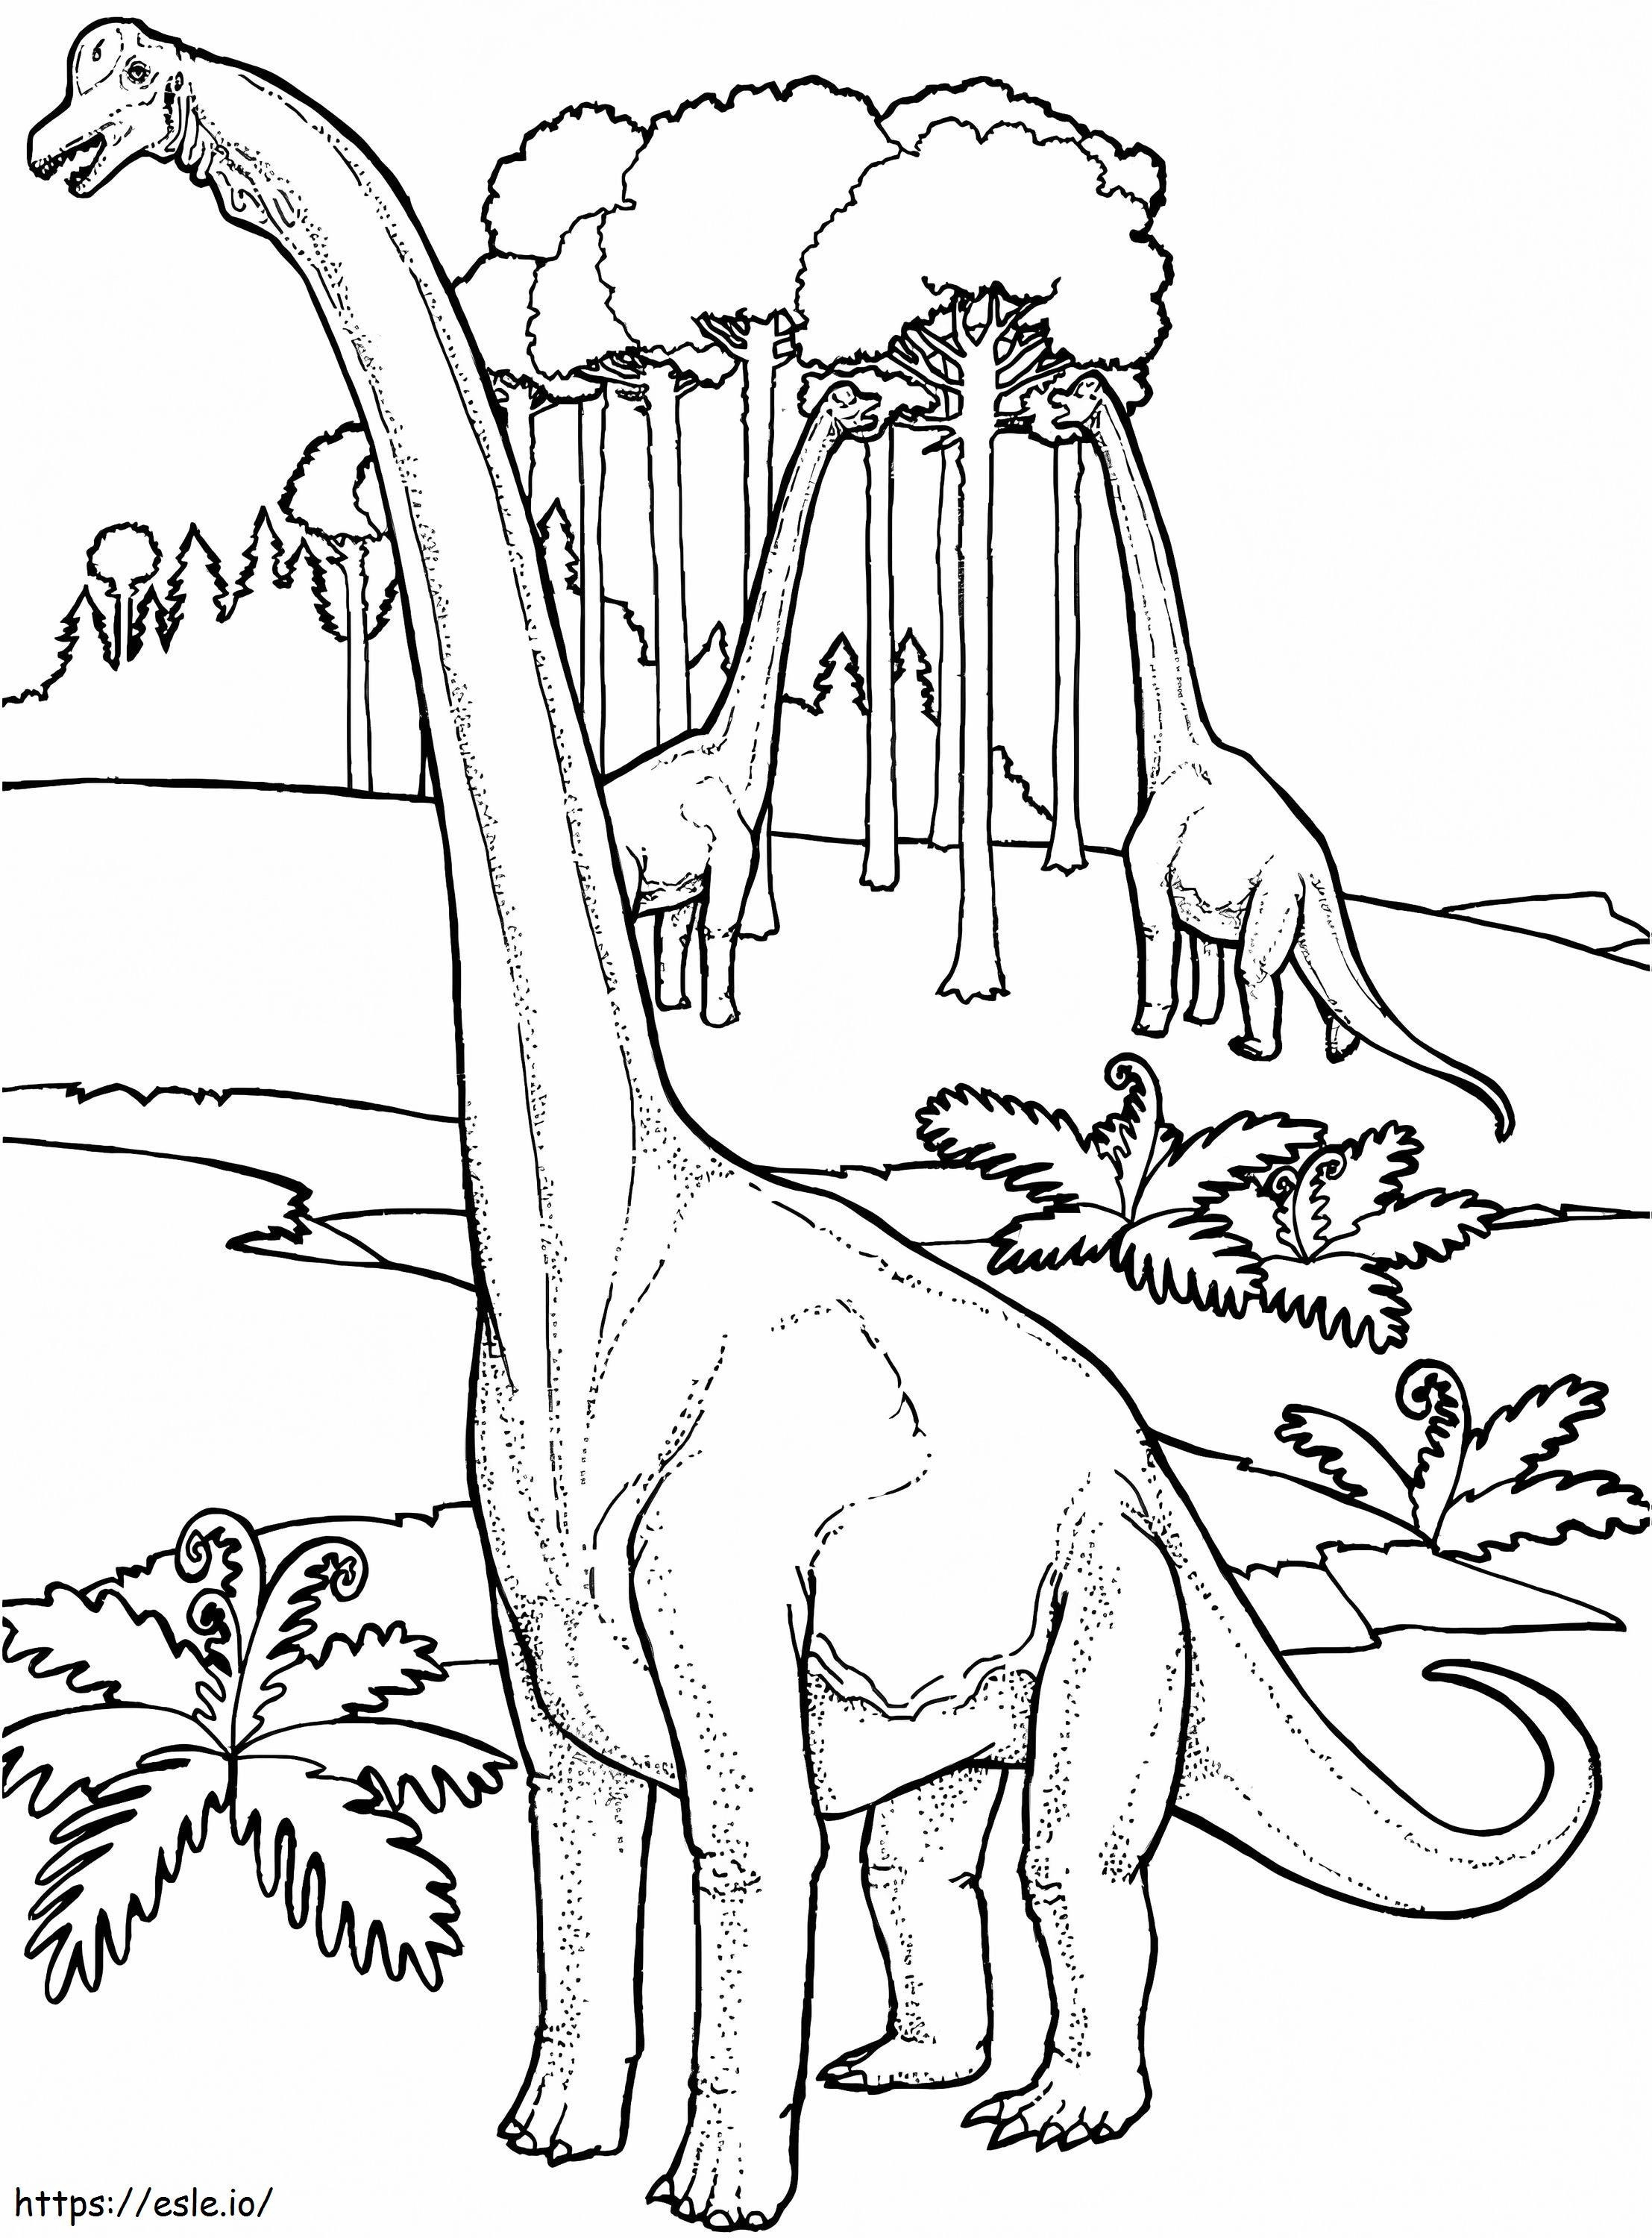 Coloriage Dinosaure Brachiosaure 756X1024 à imprimer dessin